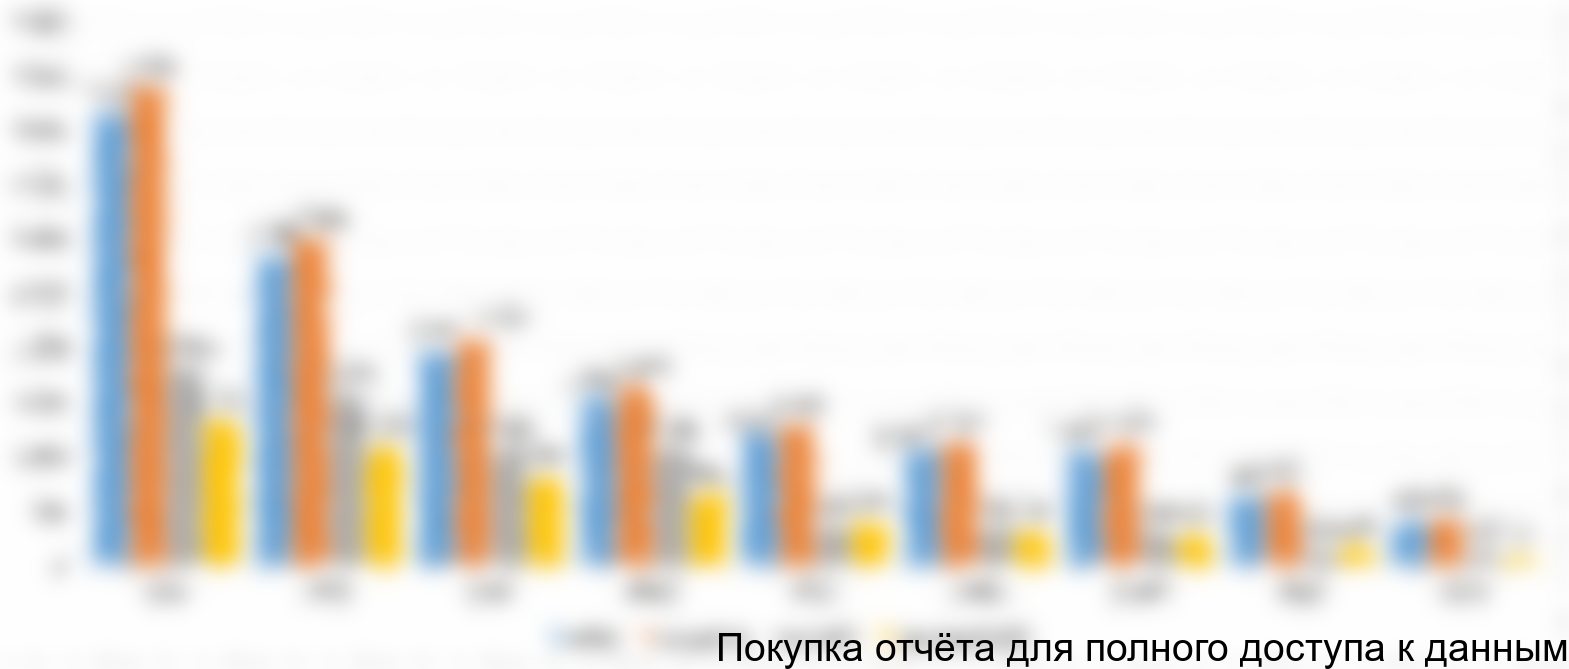 Диаграмма 9. Структура рынка моцареллы для пиццы в разрезе типов потребителей по федеральным округам РФ, % от натурального